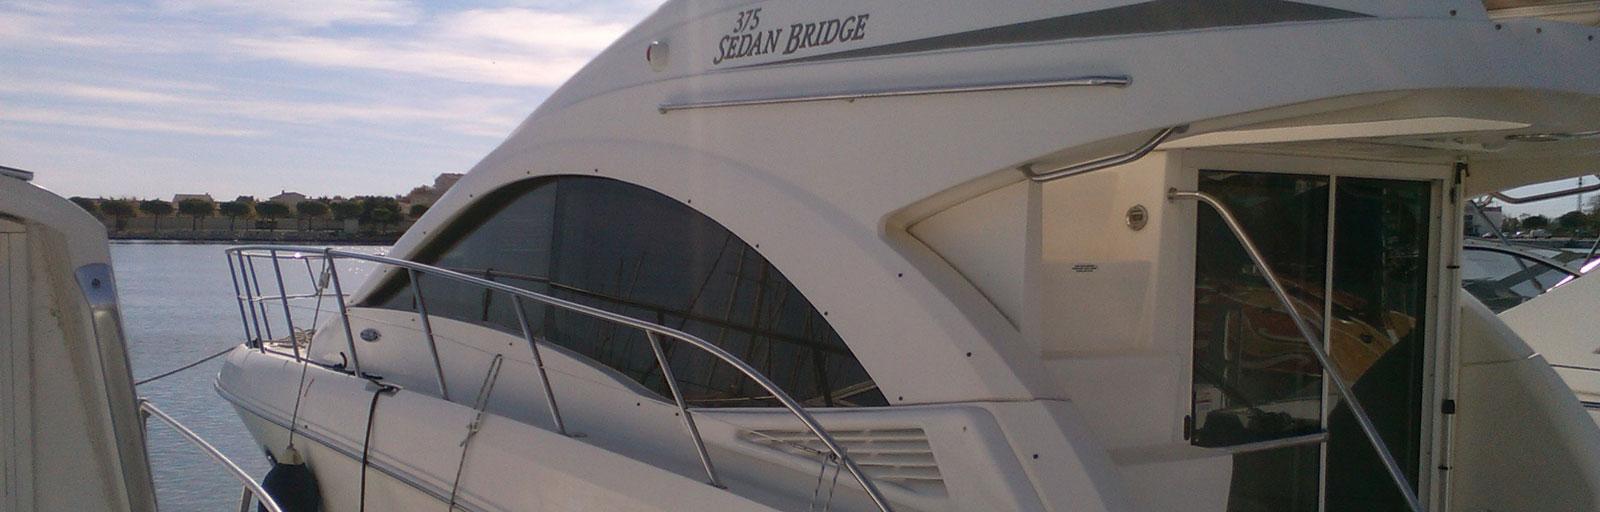 AYC - Sea Ray 375 Sedan Bridge